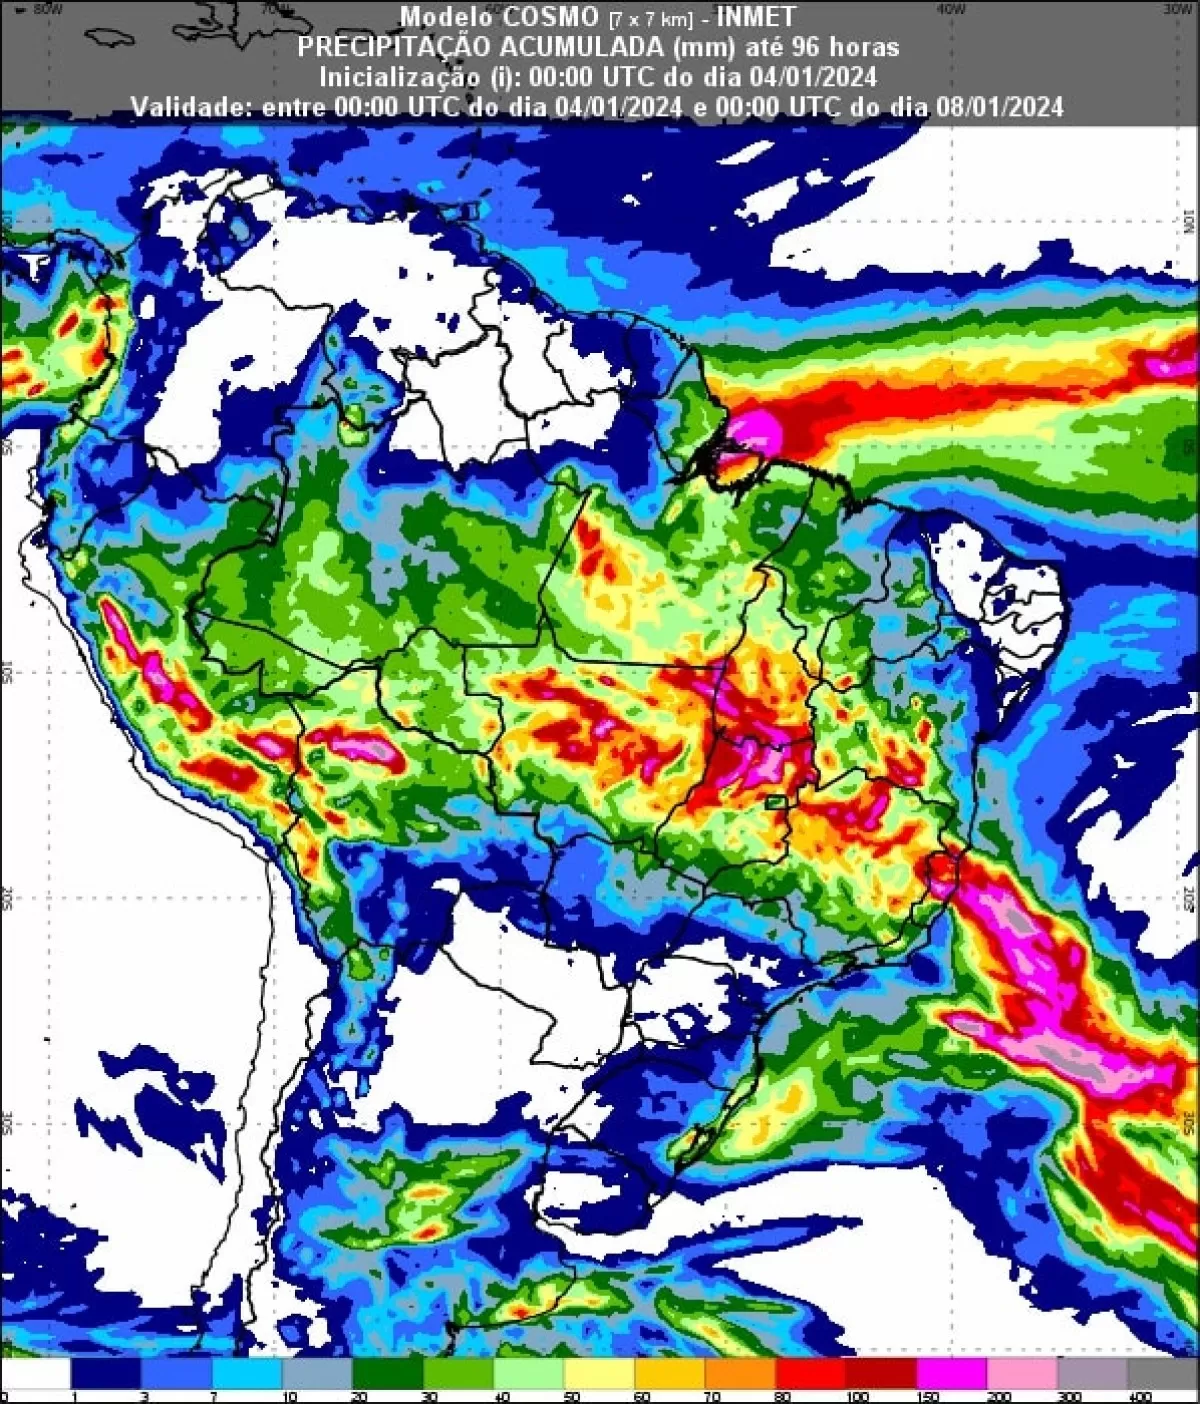 Mapa de chuva acumulada para 4 dias – até as 21h (horário de Brasília) do dia 07/01.